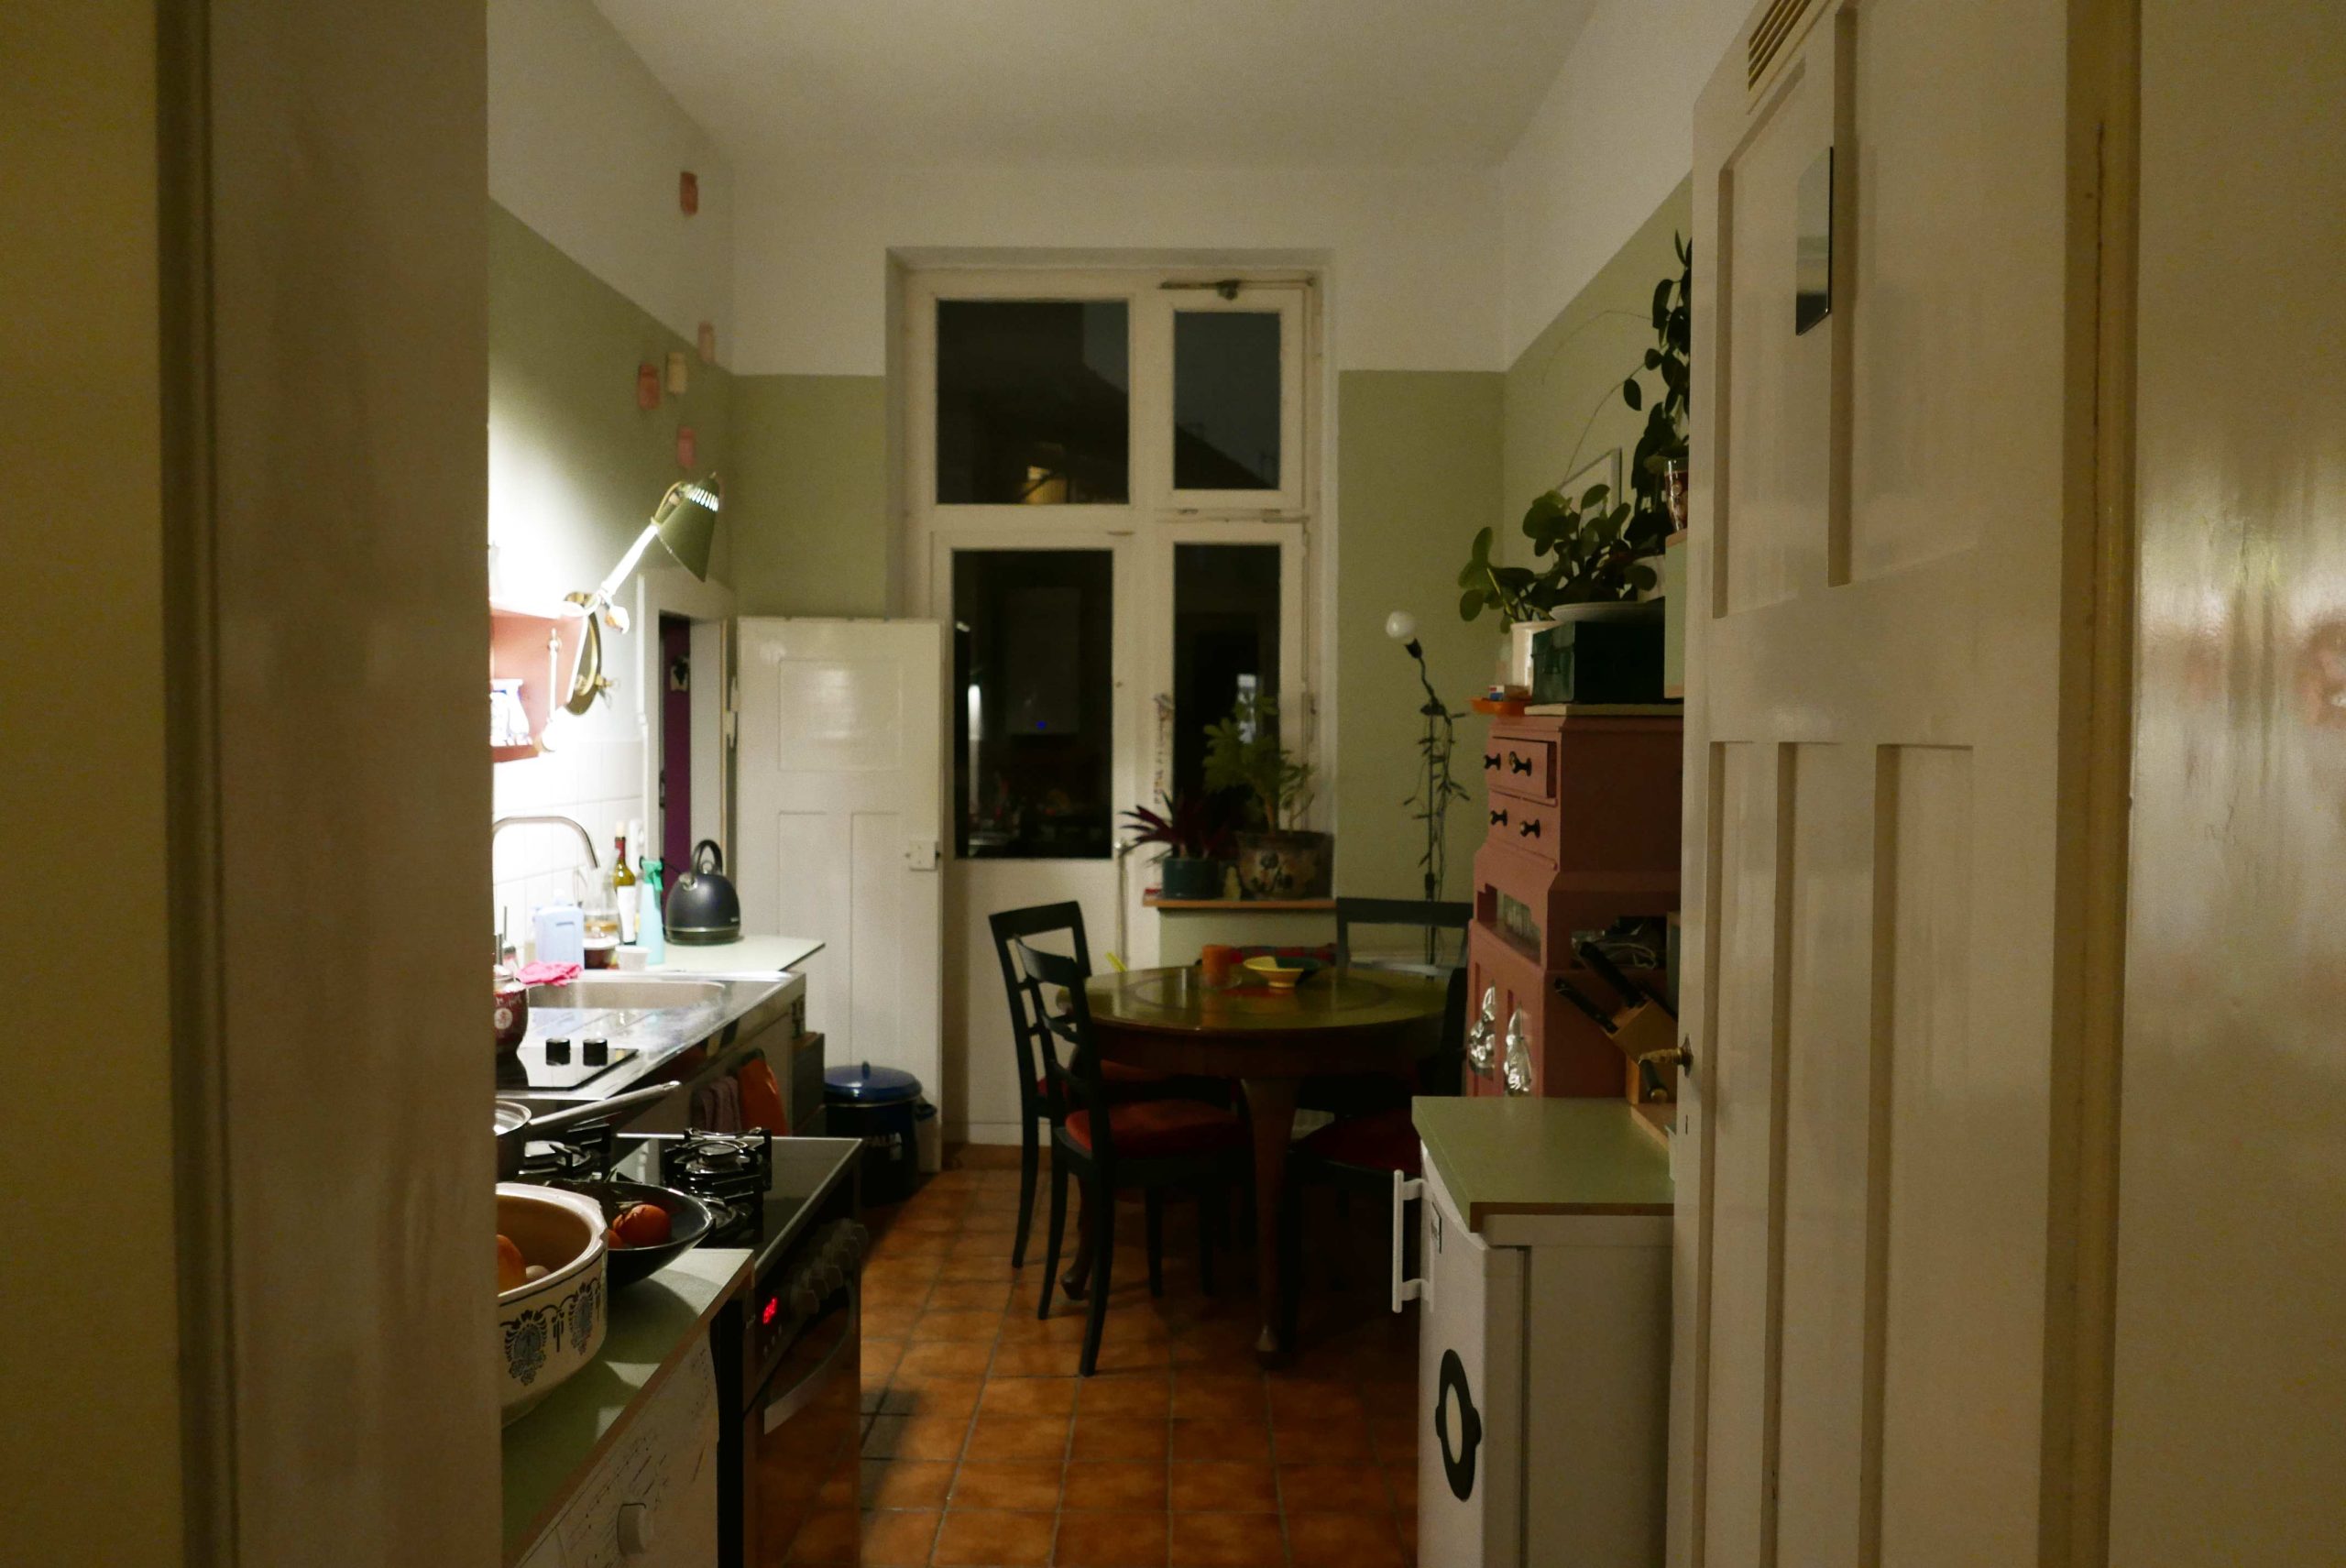 Küchenansicht mit punktueller Beleuchtung mit Reißbrettlampe